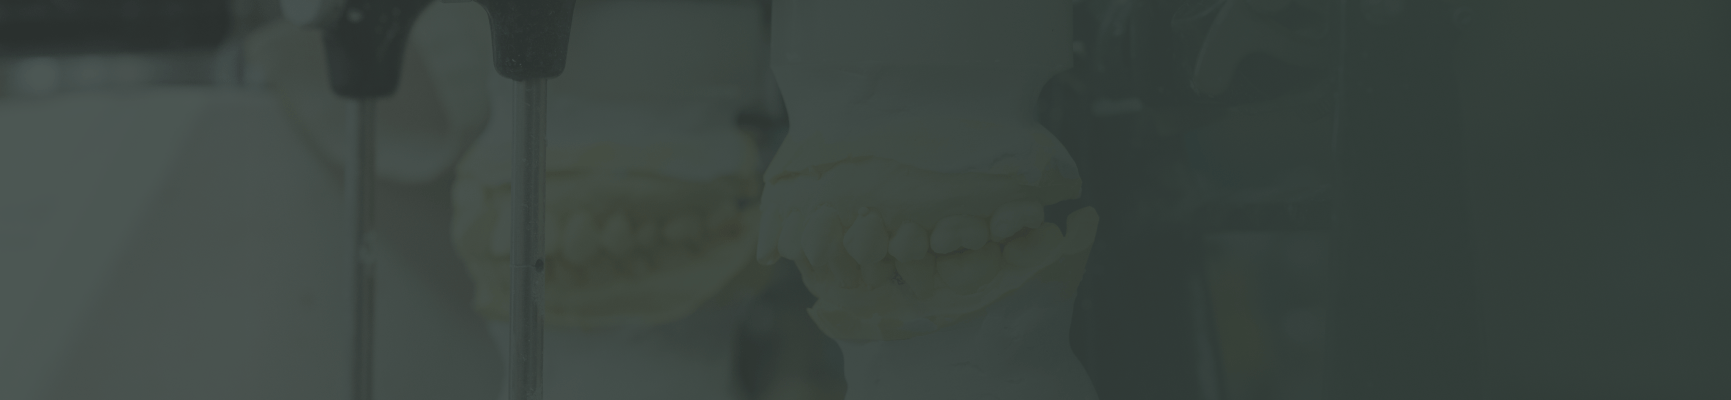 歯の模型が並んだ背景